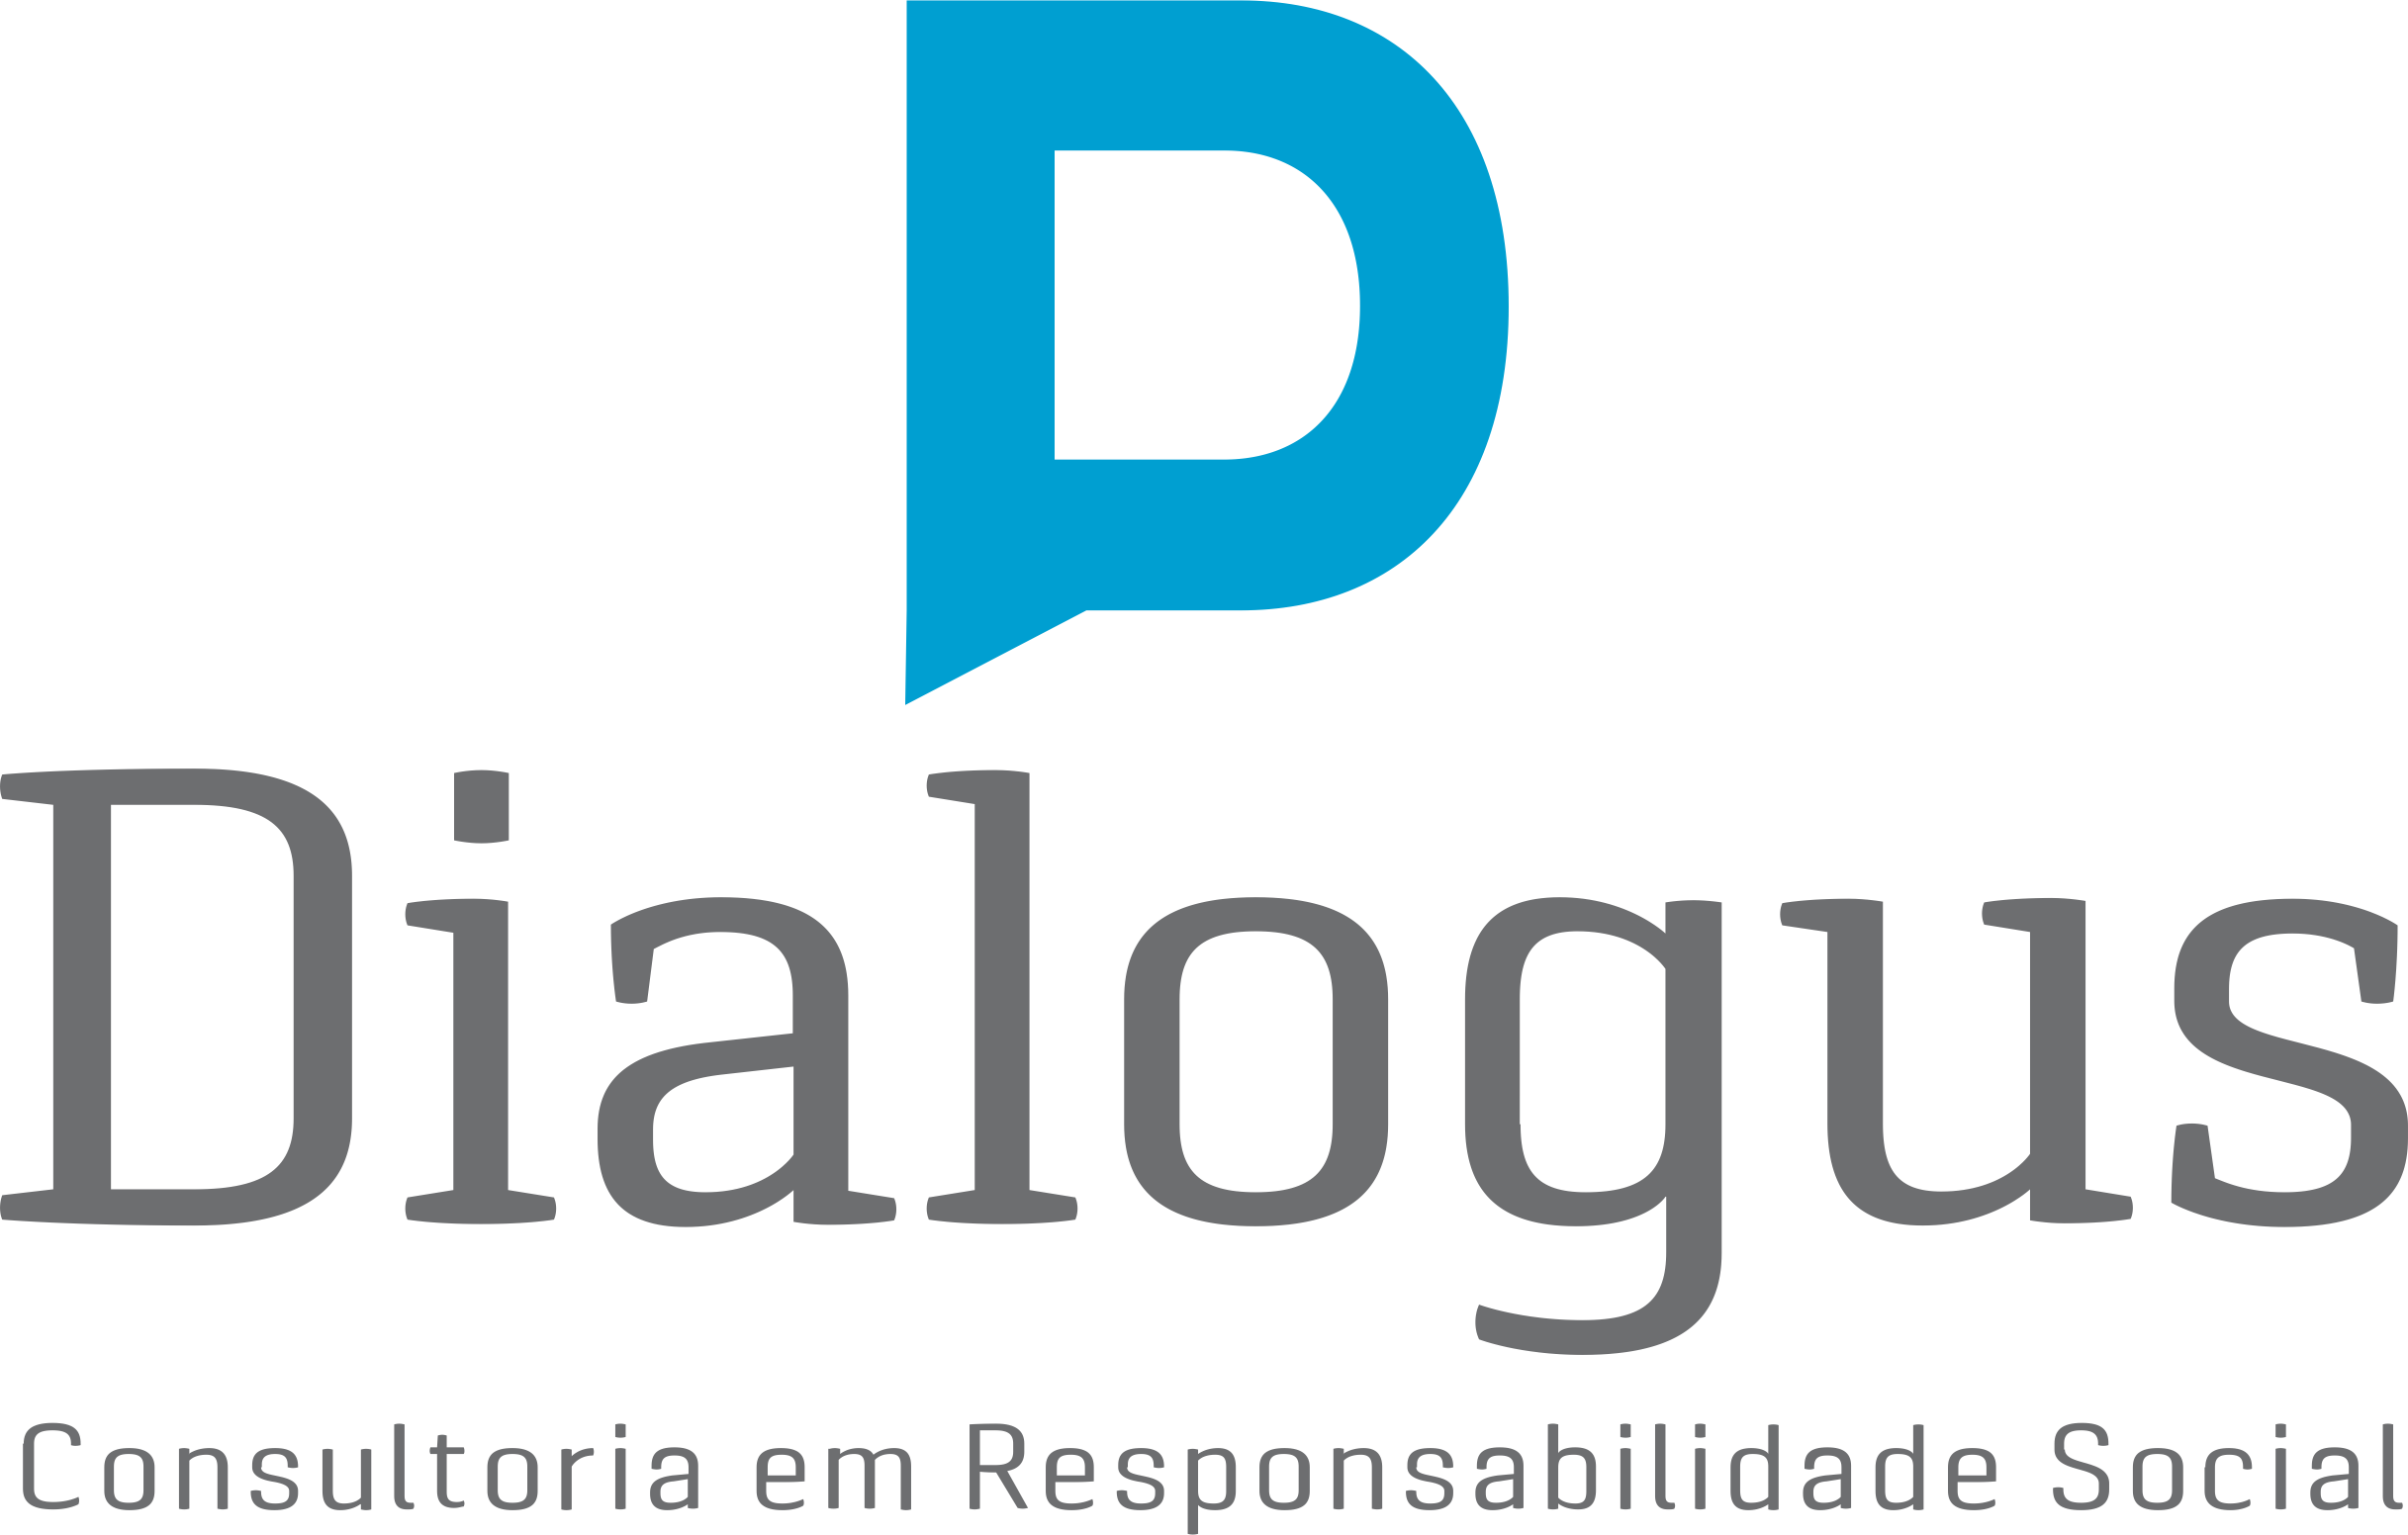 Dialogus Responsabilidade Social - Consultoria - ISO 14001 - Fortaleza/CE